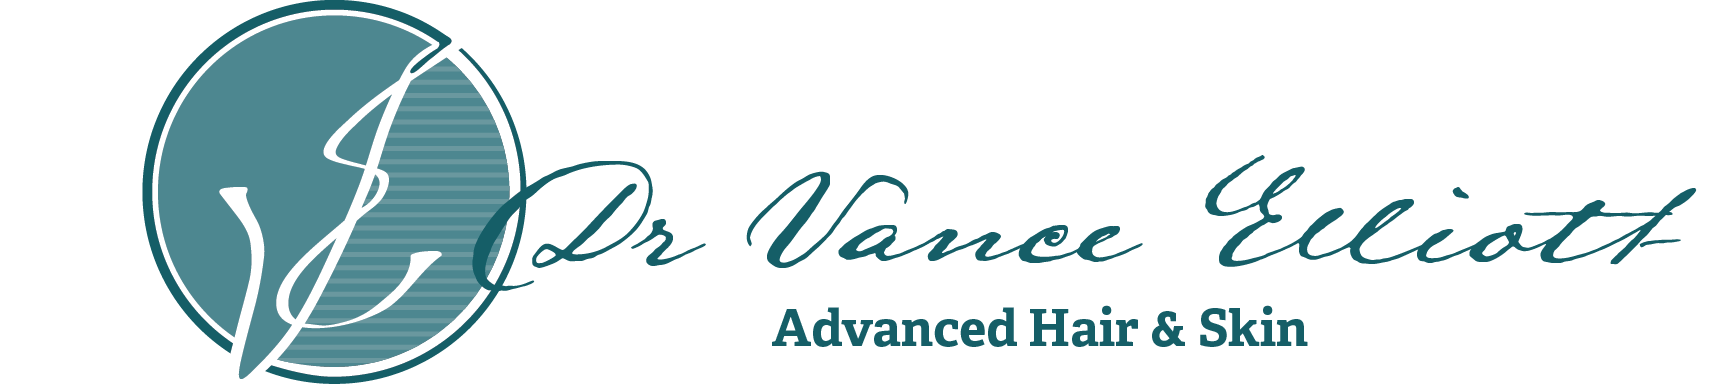 Dr. Vance Elliott - Advanced Hair and Skin